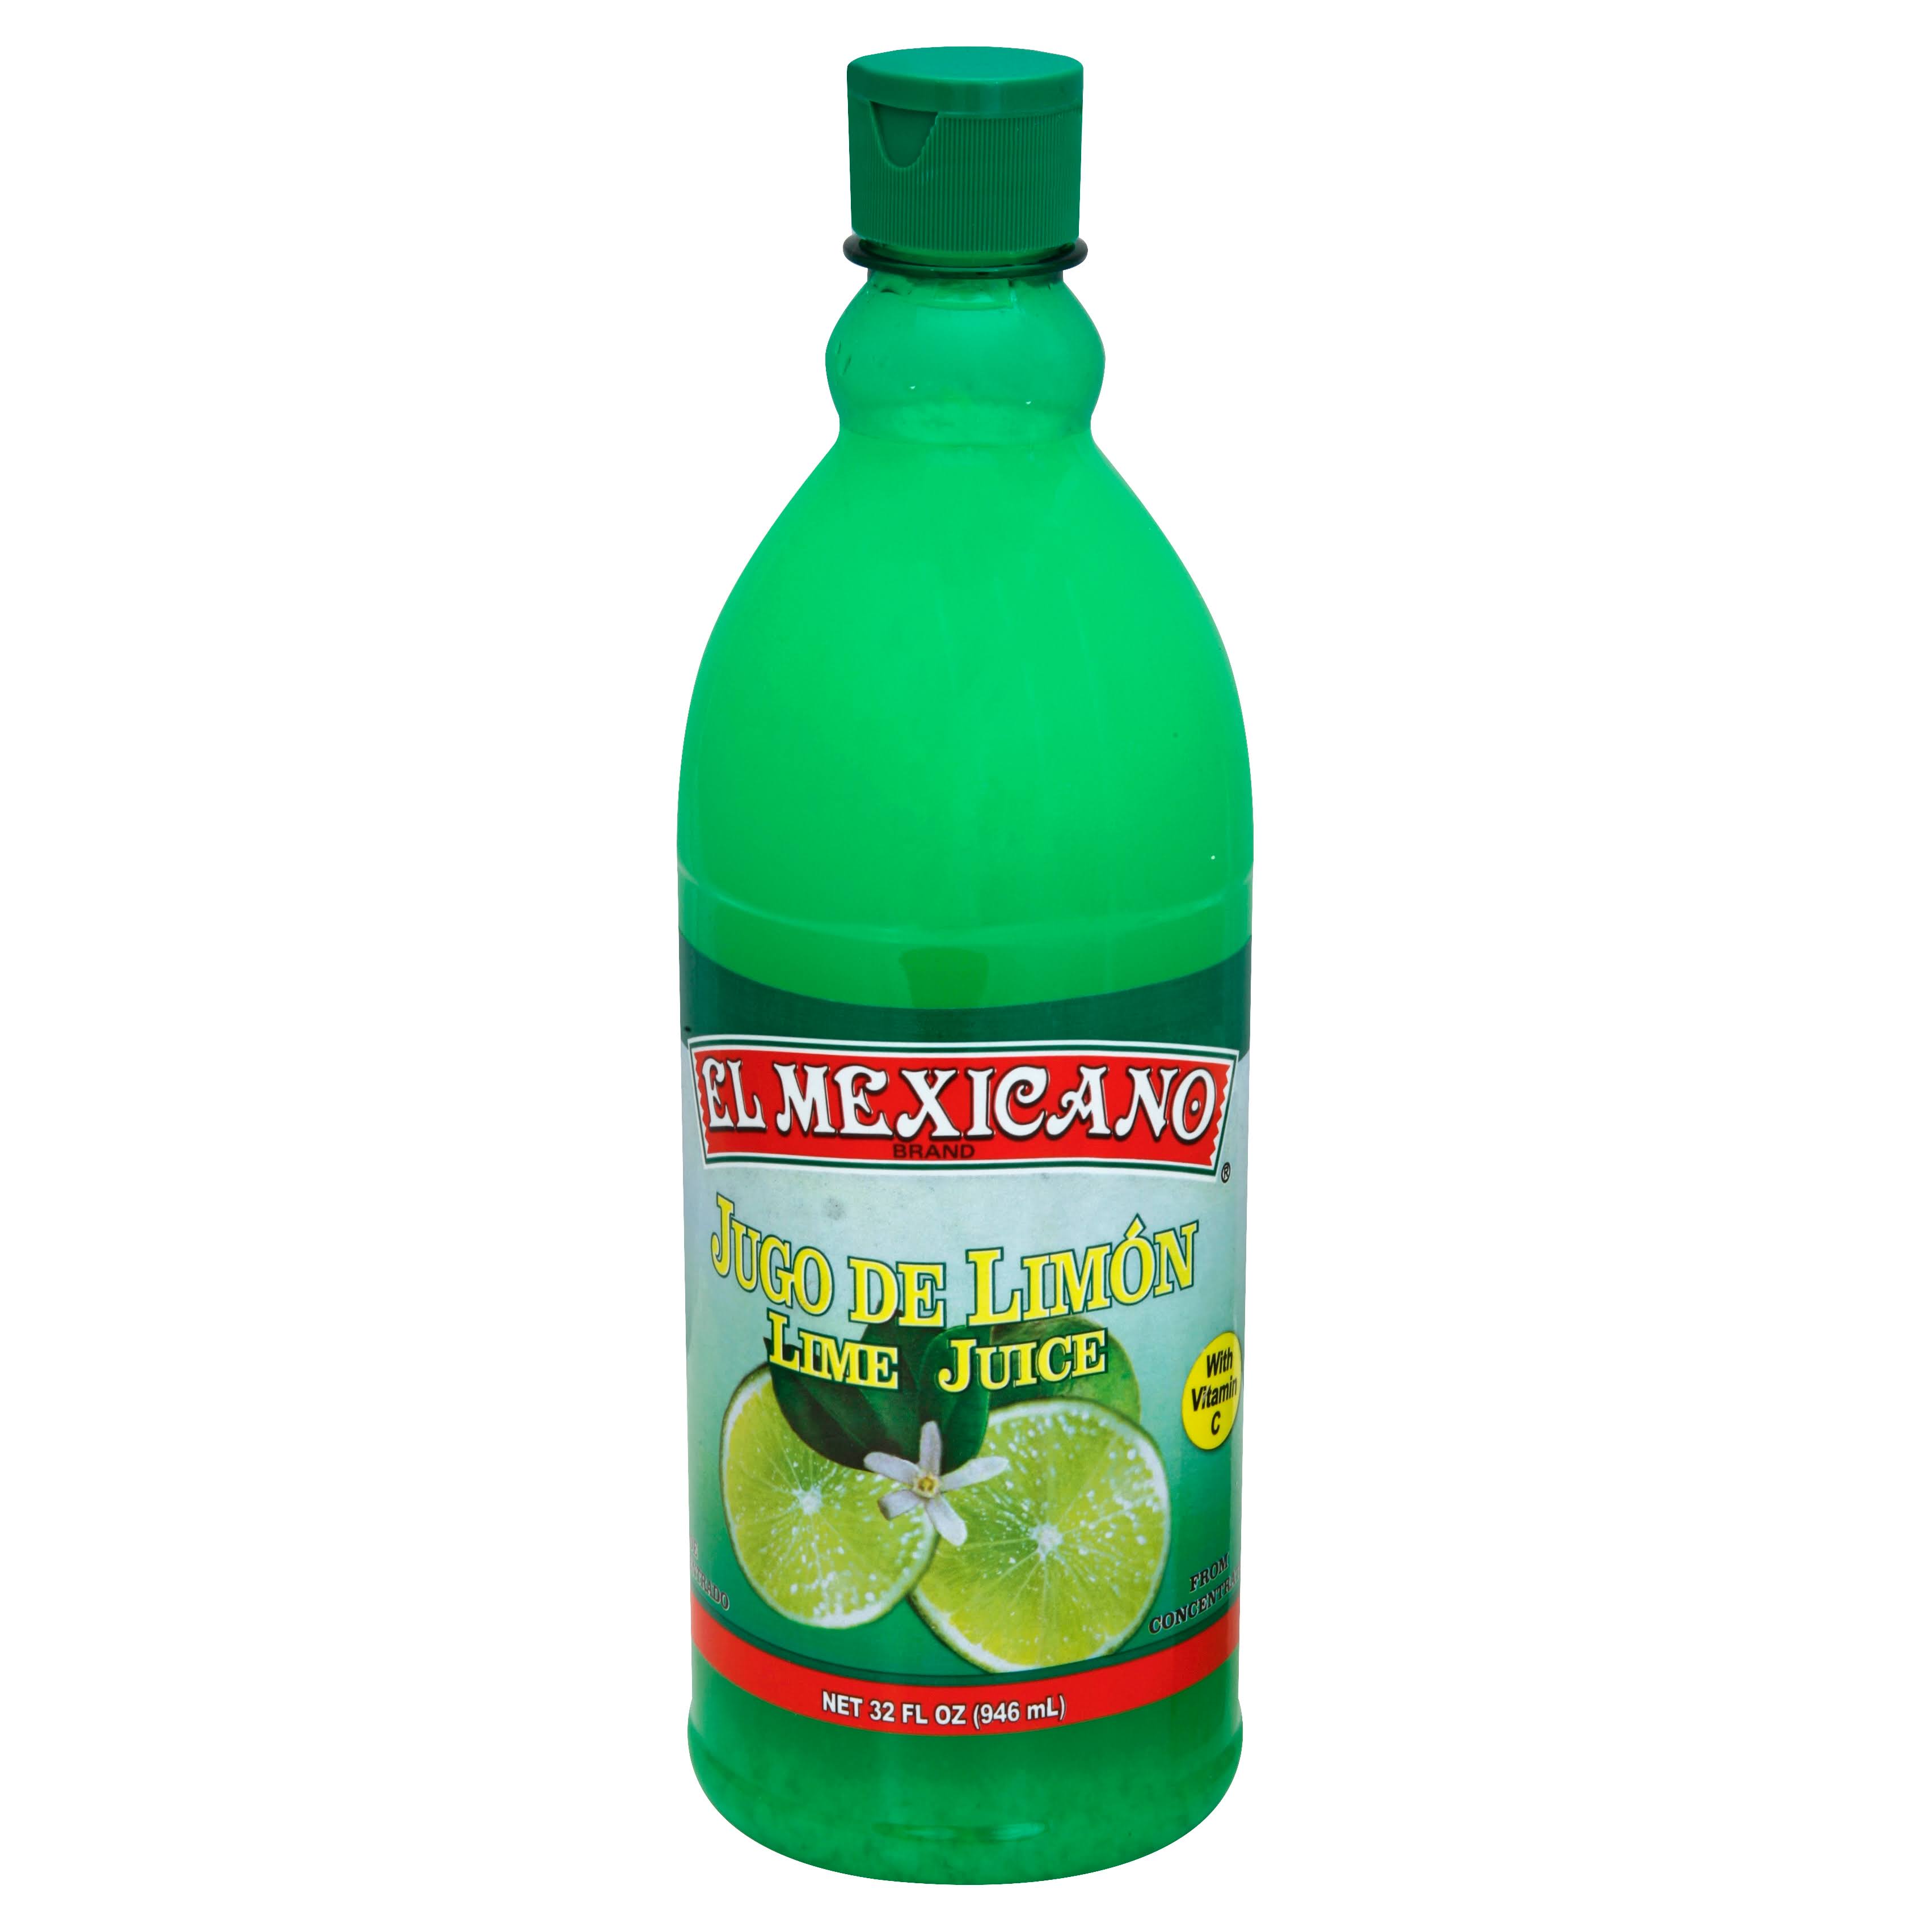 El Mexicano Lime Juice - 32oz